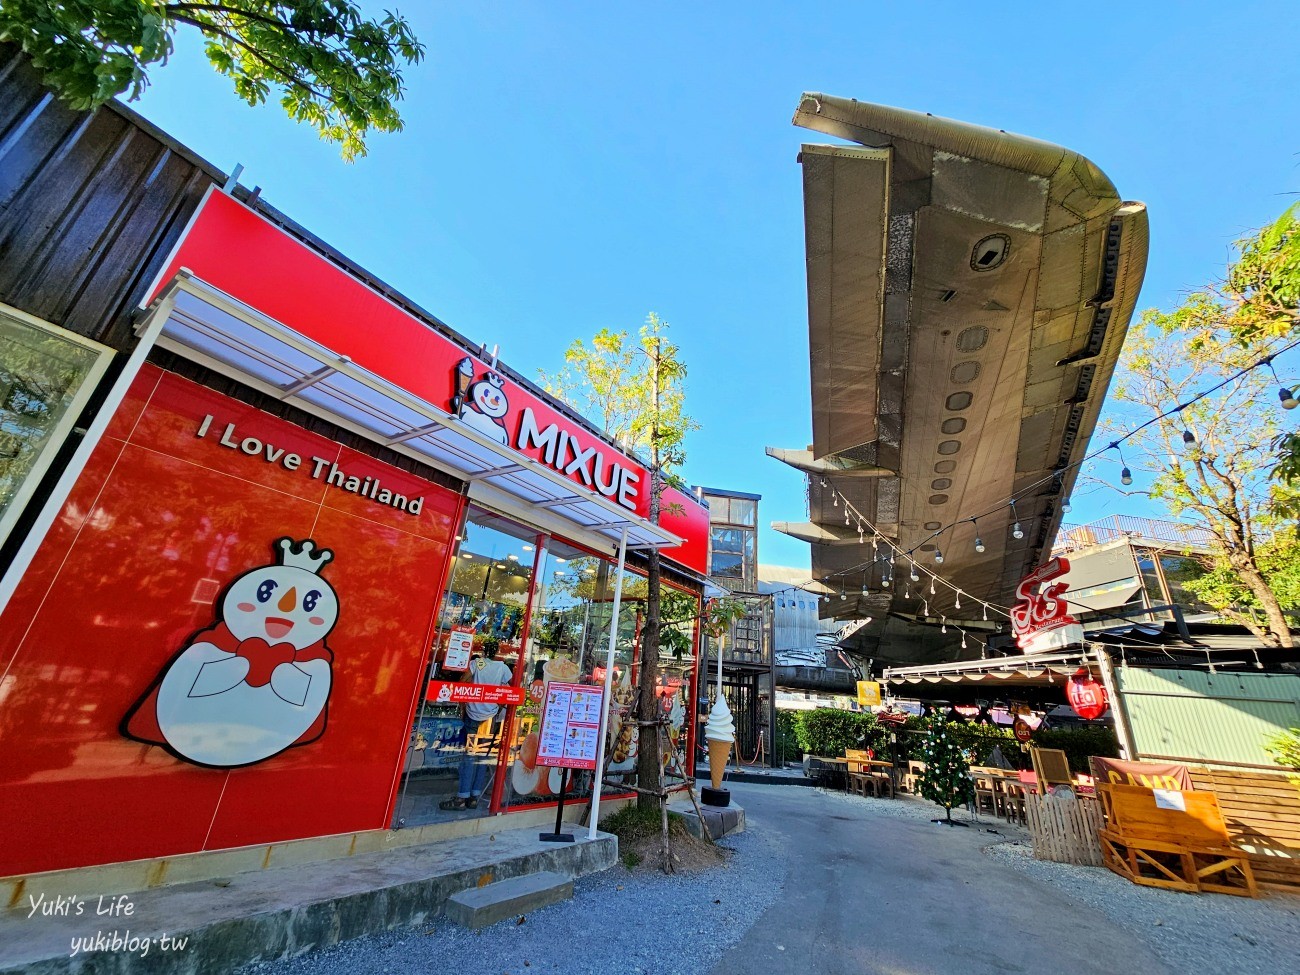 曼谷景點【CHANG CHUI飛機市集】真實巨大飛機.文青風佈置.餐廳商店超Chill - yukiblog.tw